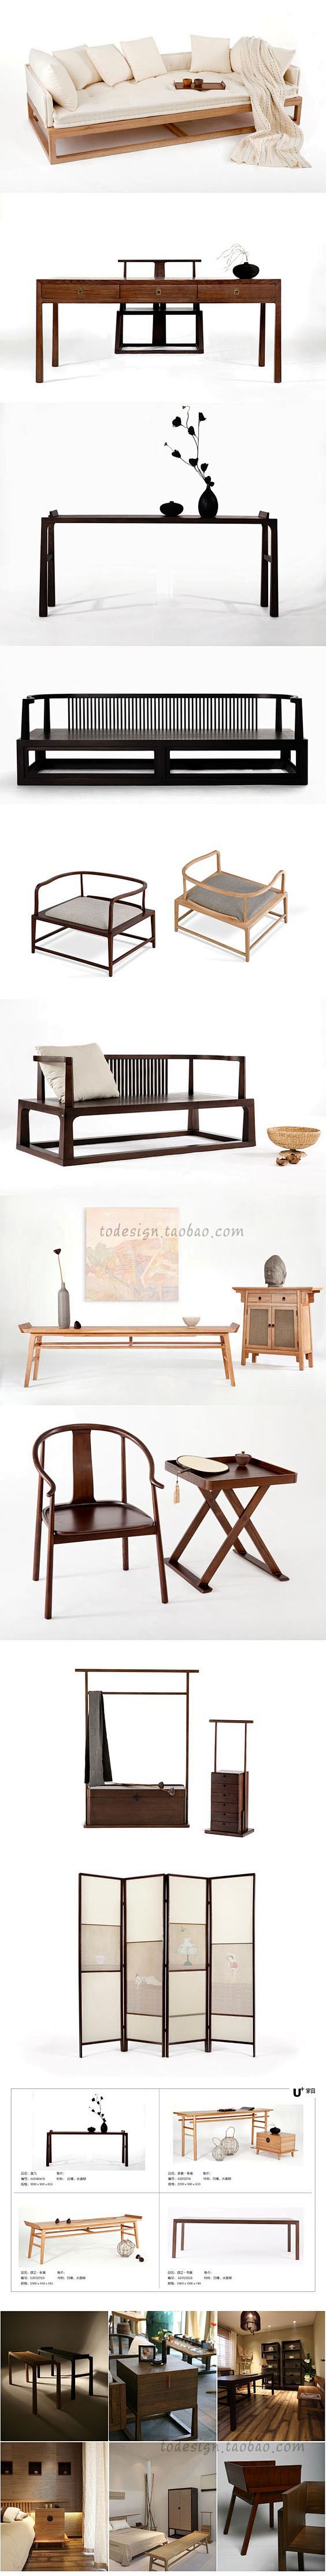 现代新中式禅意实木家具/室内设计软装素材...